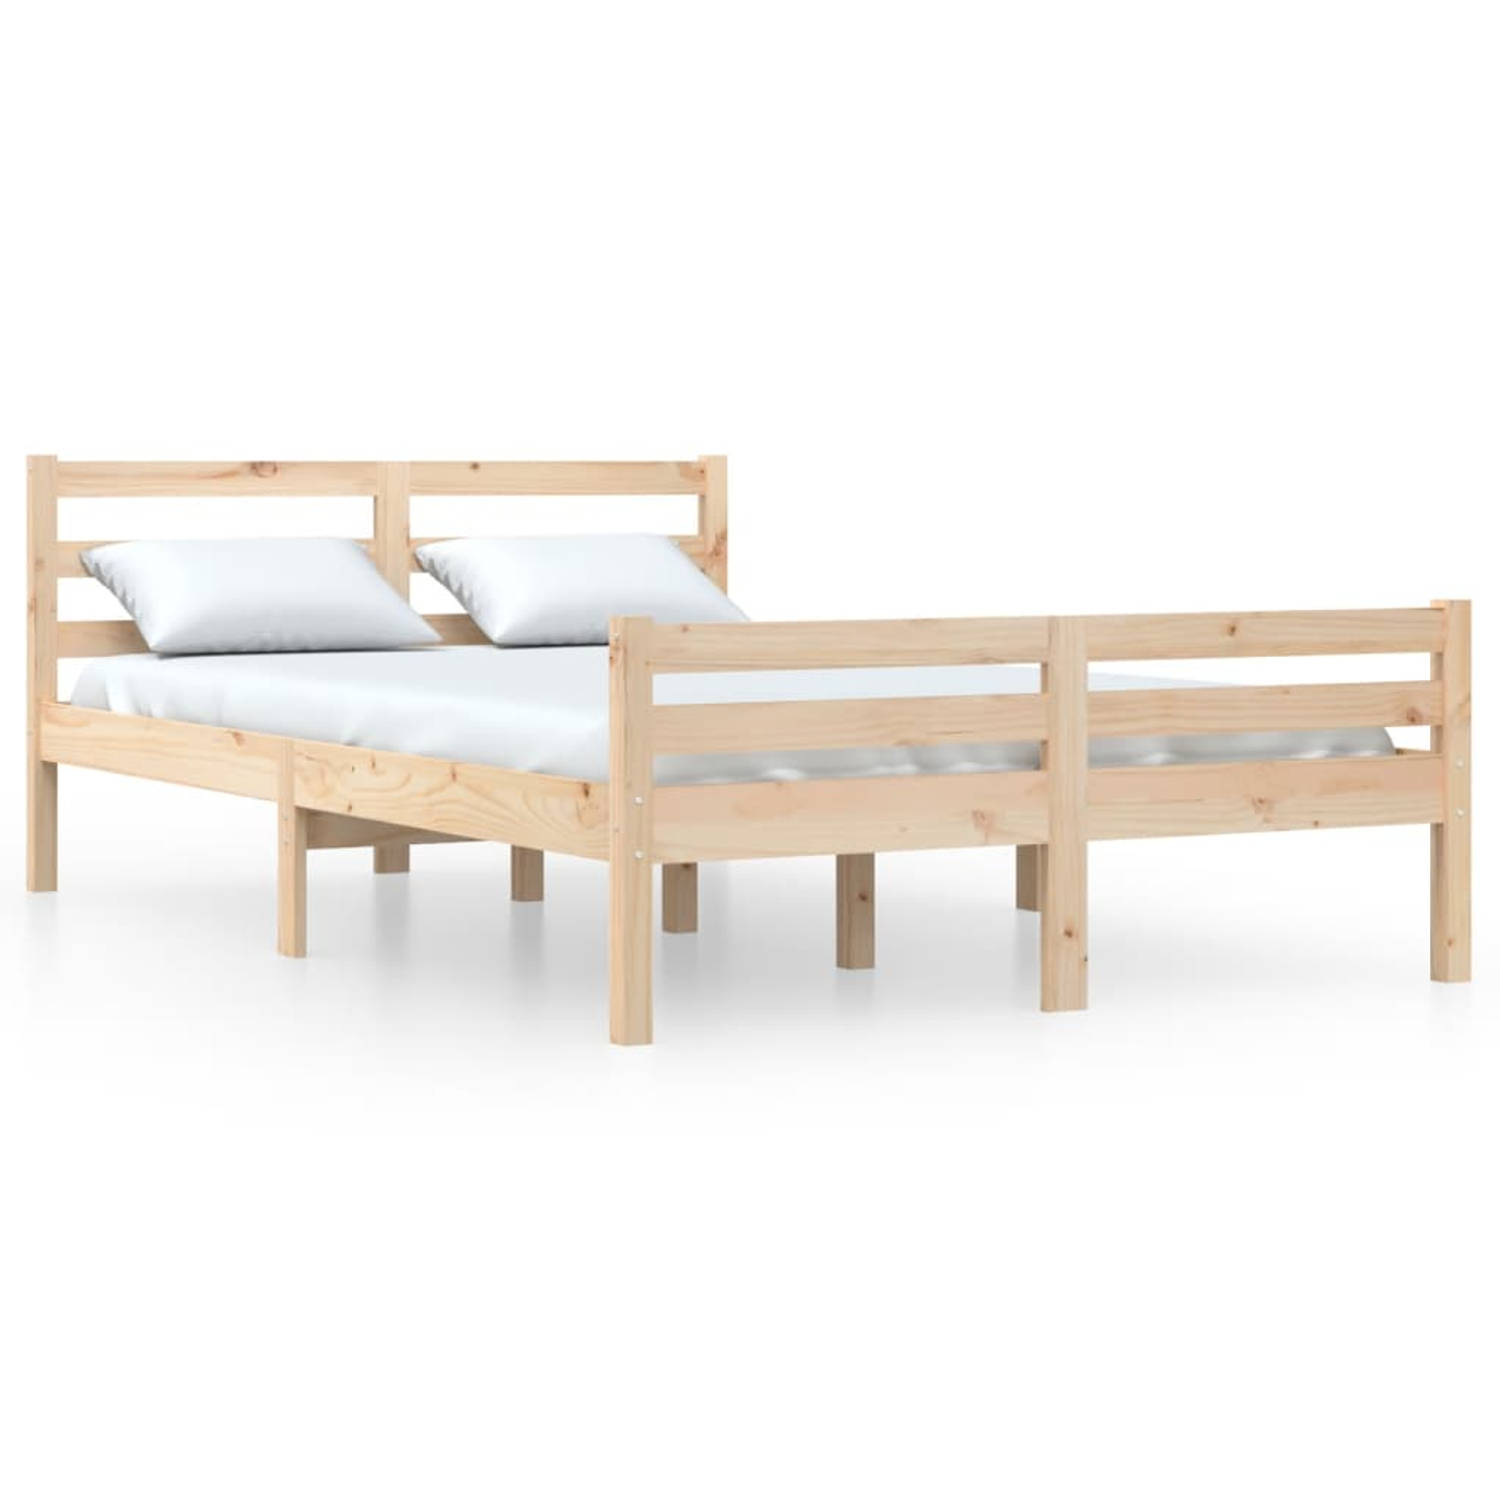 The Living Store Bedframe massief hout 135x190 cm 4FT6 Double - Bedframe - Bedframes - Bed - Bedbodem - Ledikant - Bed Frame - Massief Houten Bedframe - Slaapmeubel - Tweepersoonsb